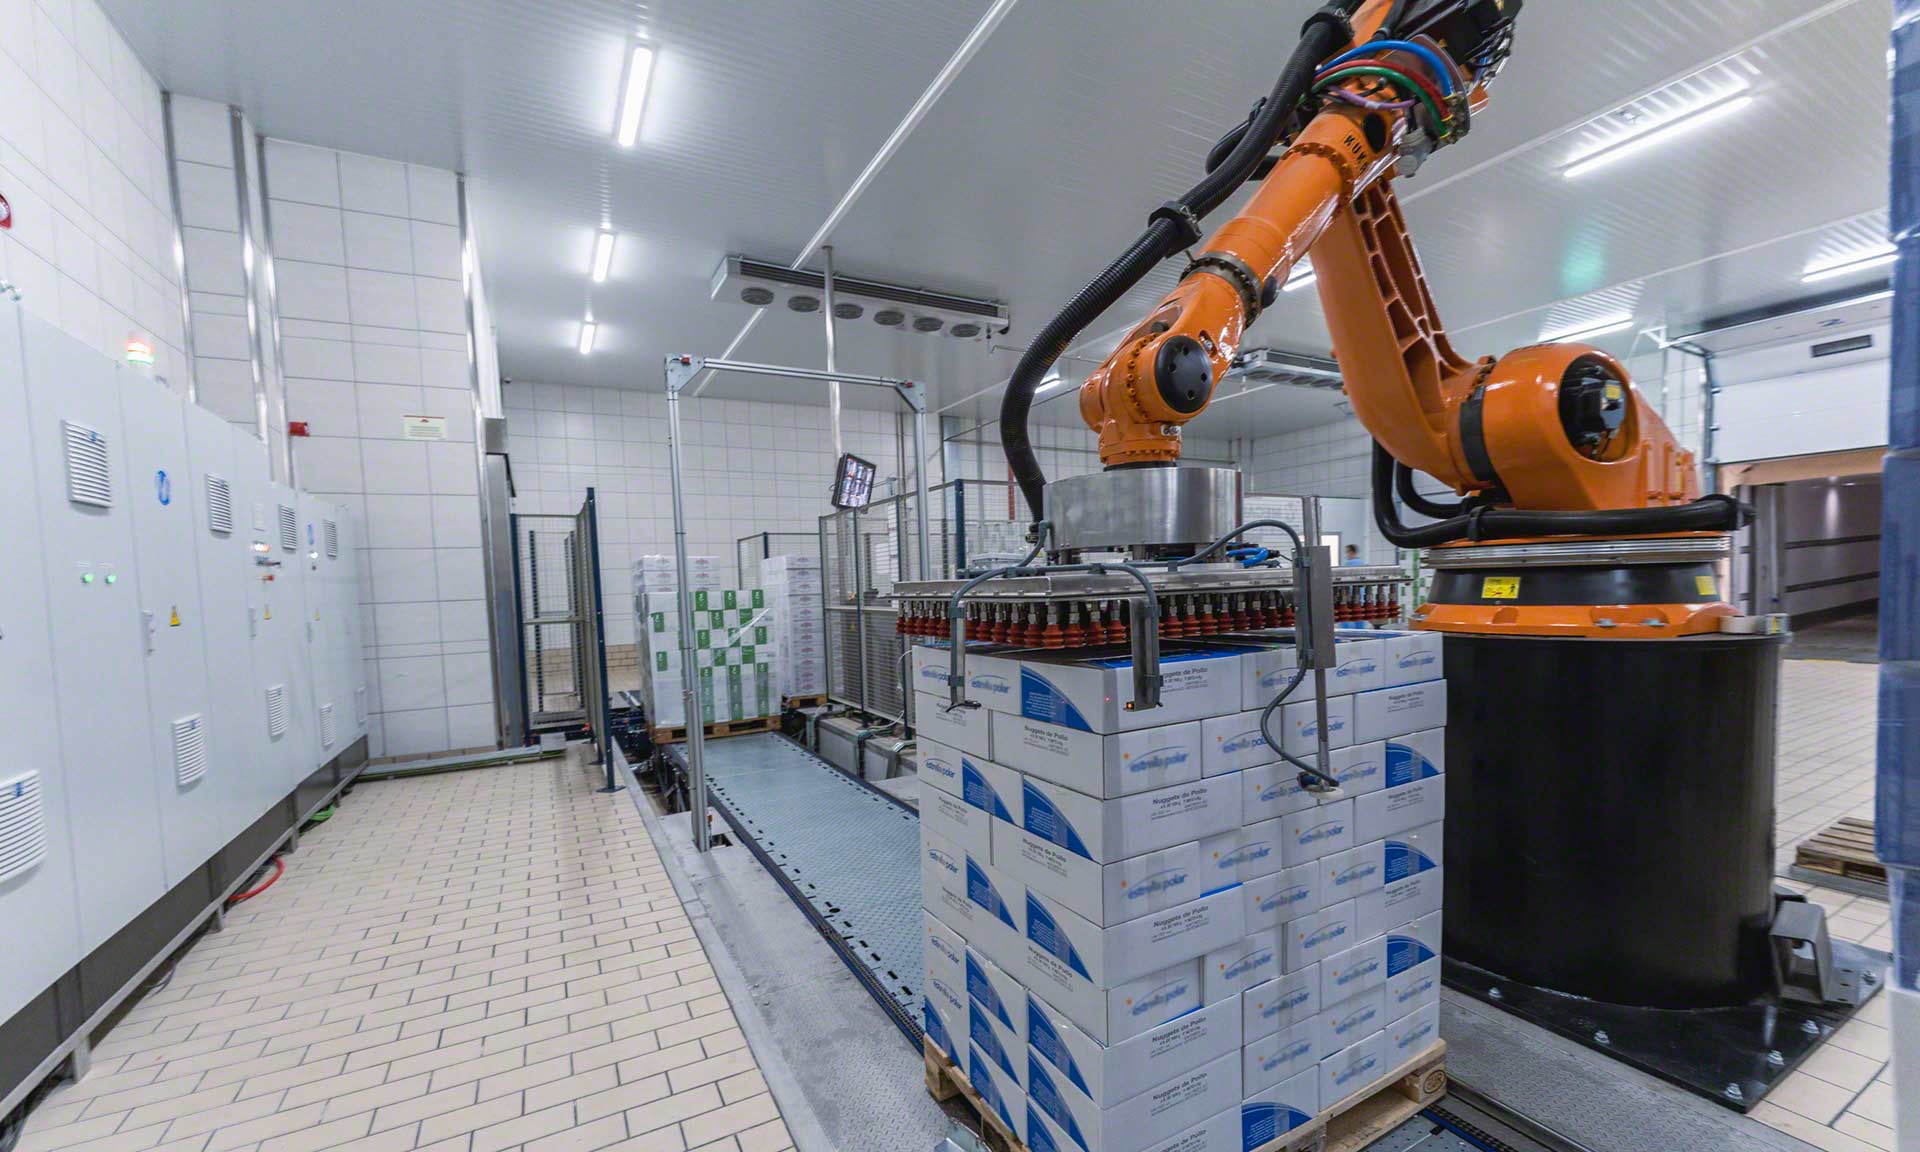 Le robot d'entrepôt apporte rapidité et efficacité aux tâches de stockage et de préparation de commandes